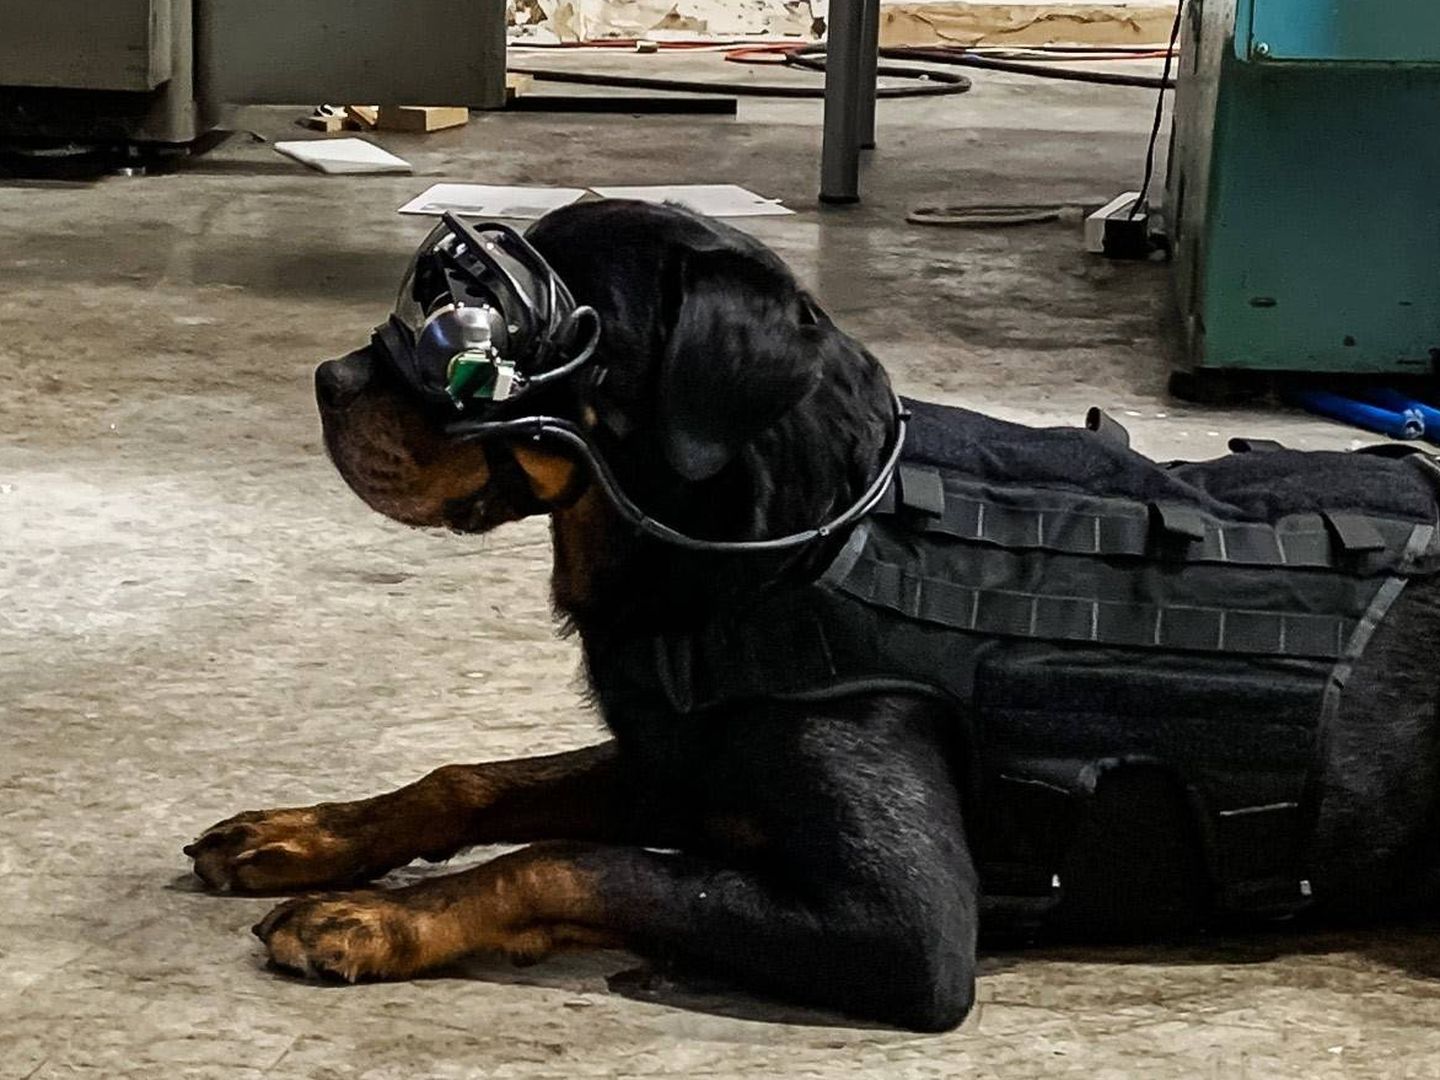 Pruebas de las gafas de realidad aumentada con un perro militar. (US Army)